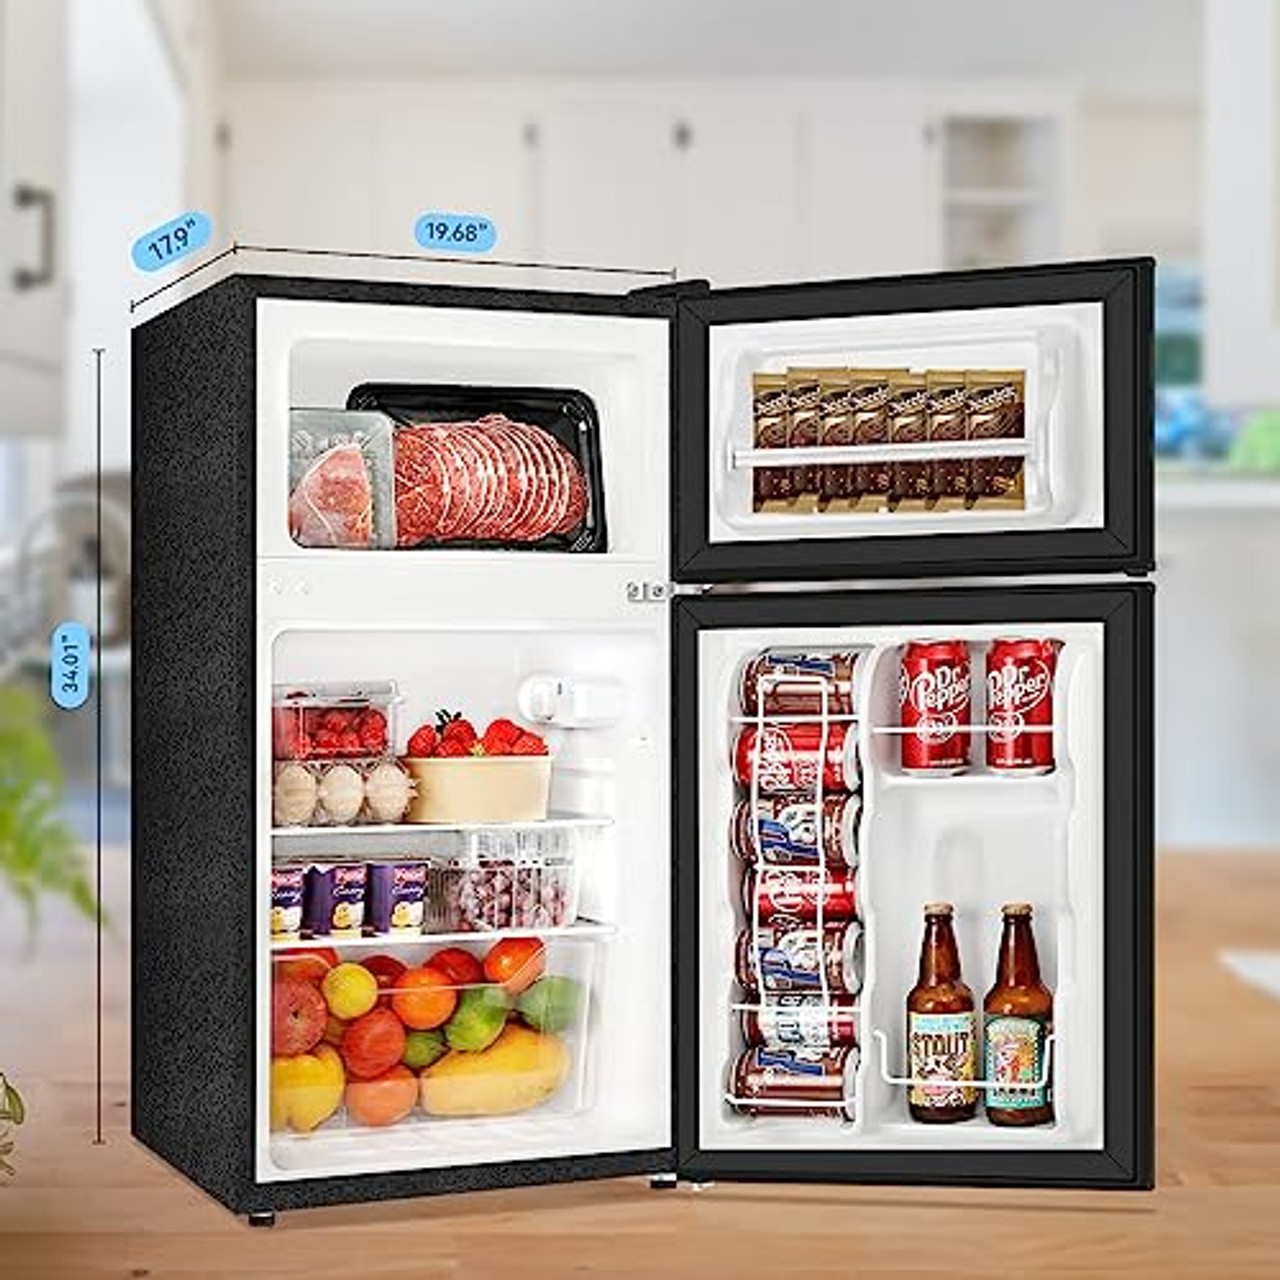 2 door compact refrigerator freezer from